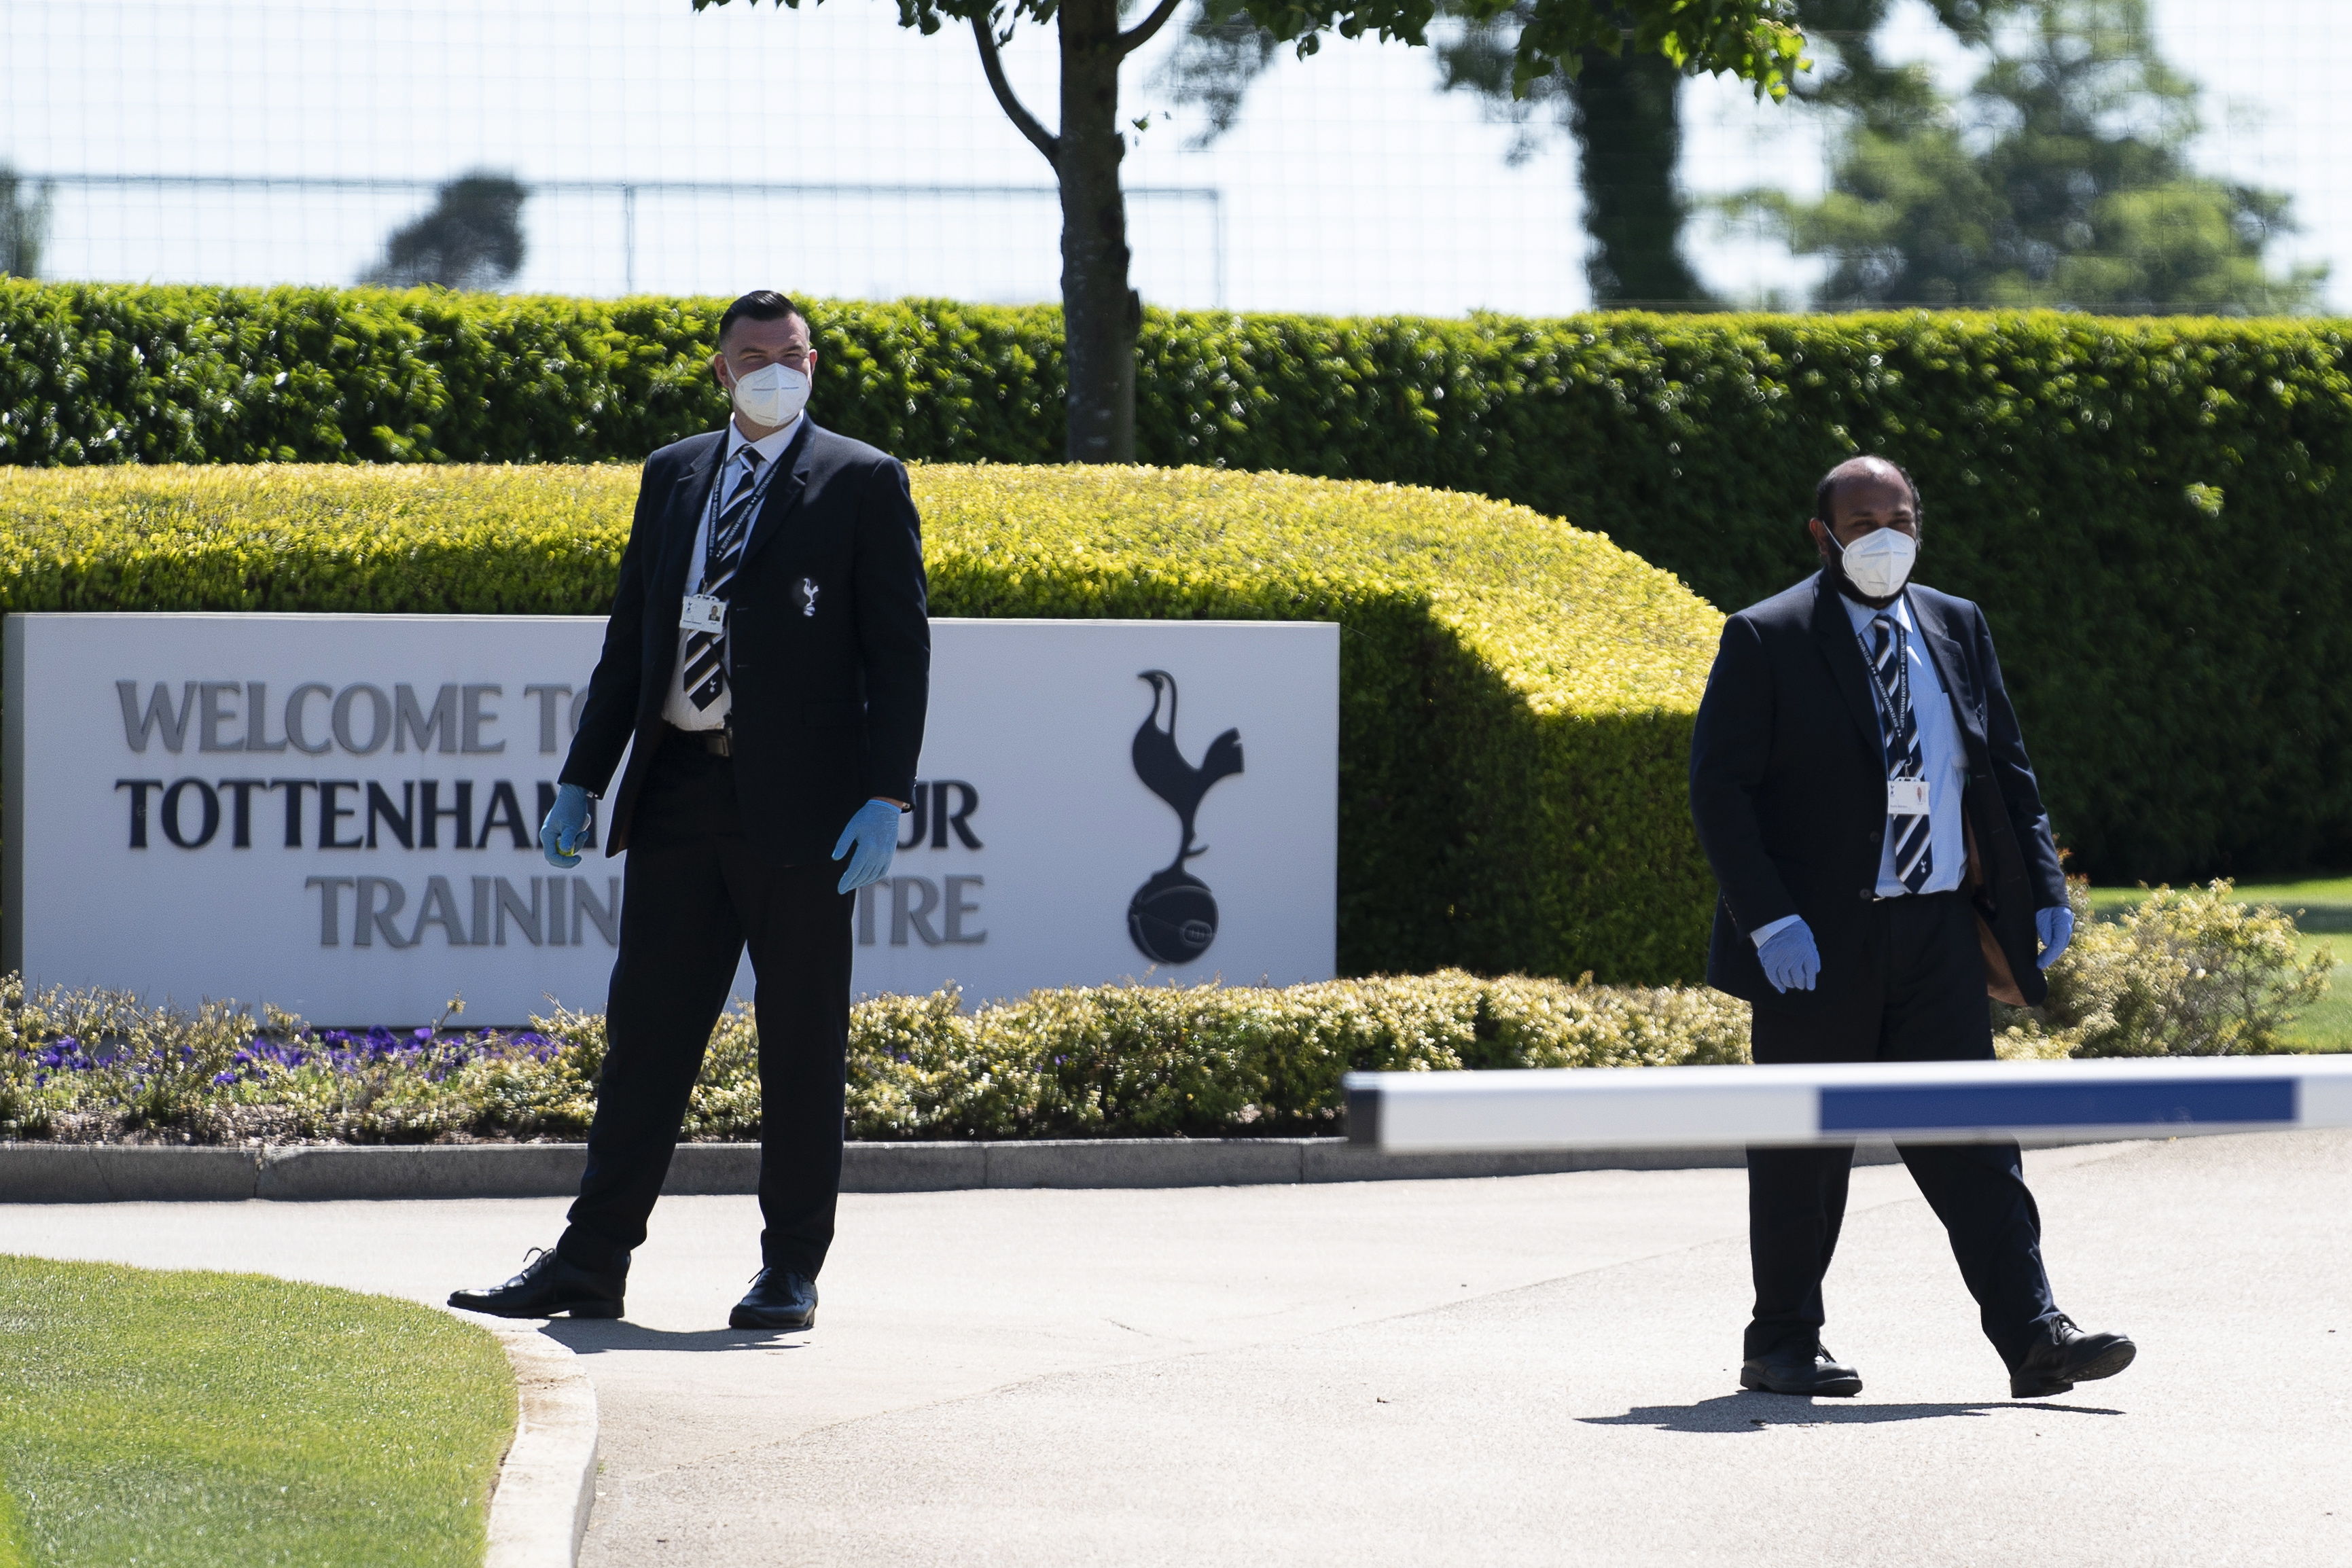 Dos miembros del staff del Tottenham, en la entrada de la sede del club de la Premier League. (Foto Prensa Libre: EFE)